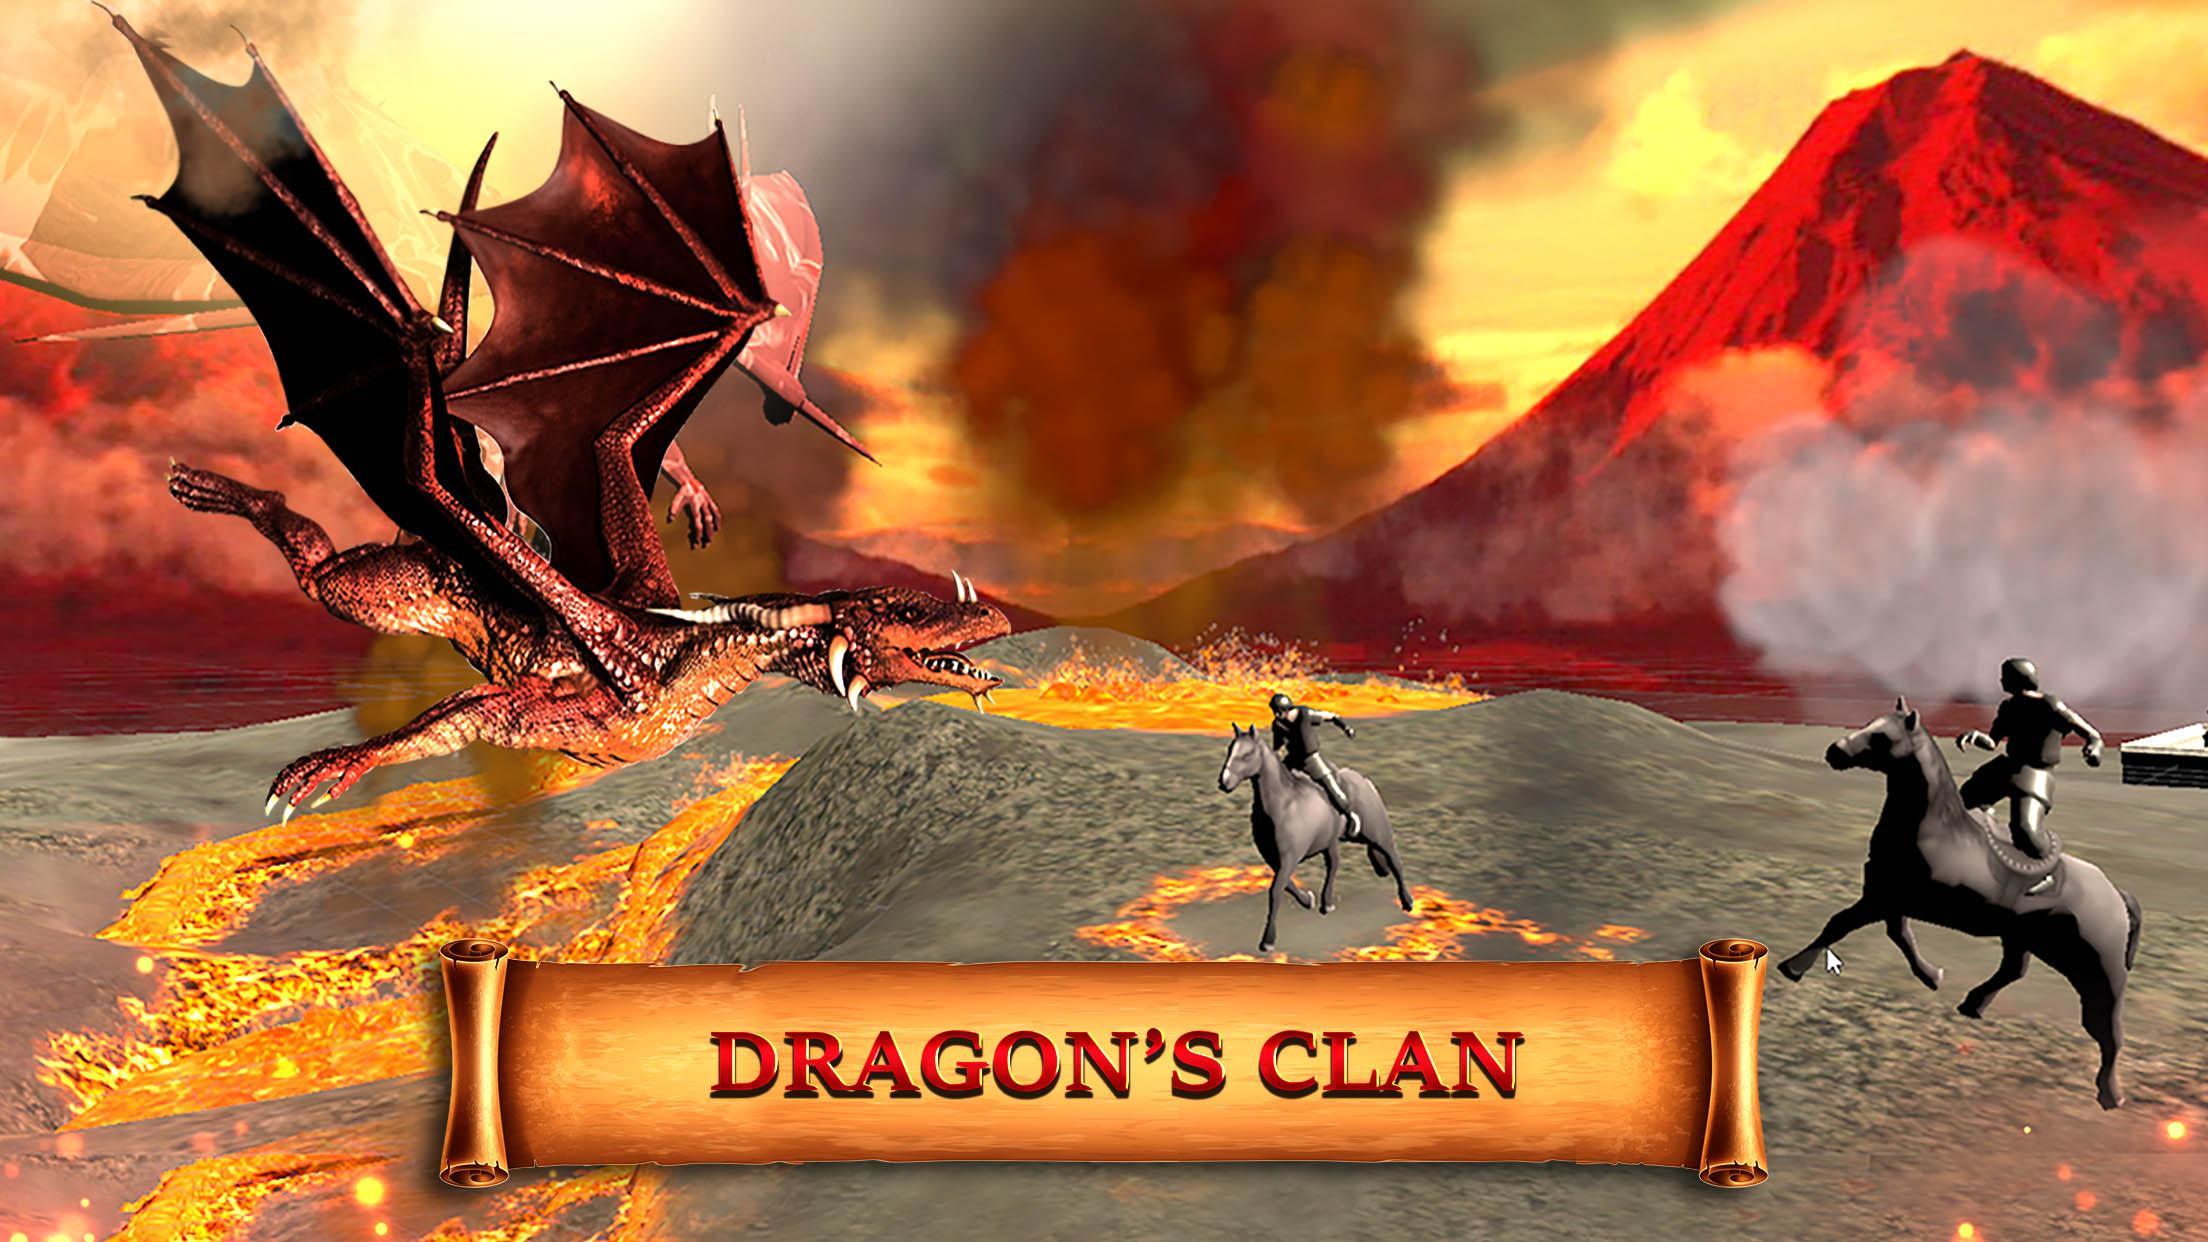 Летаешь на драконе игра. Симулятор огненного дракона. Пламя дракона игра. Dragonfire Огненный дракон игра. Симулятор летающего дракона 2020.